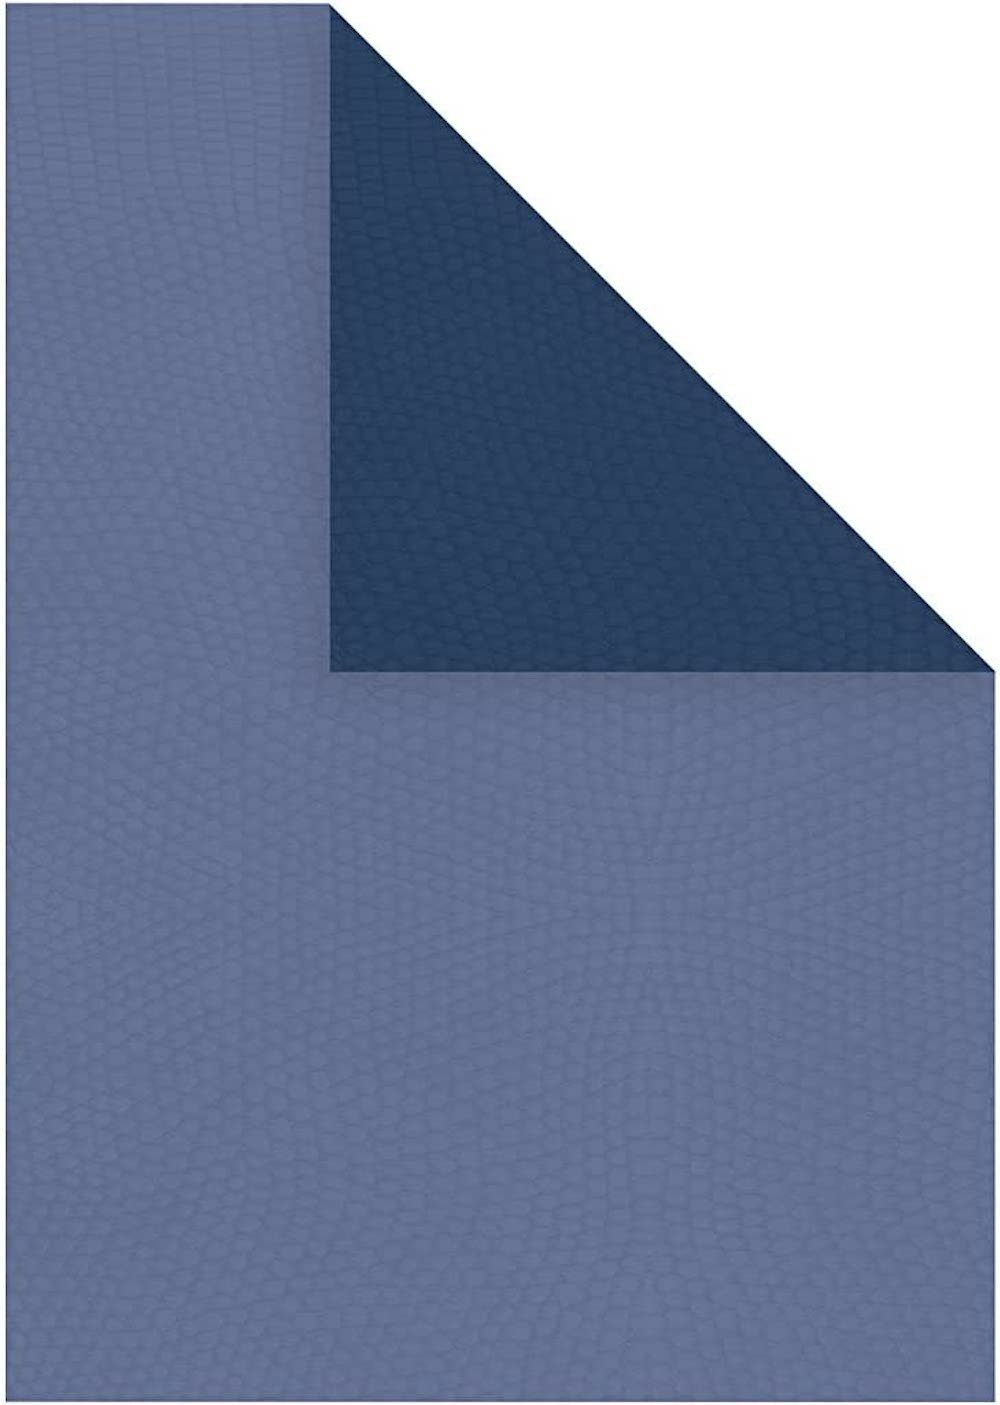 Creotime Zeichenpapier Duo Papier Strukturpapier, A4 21x30 cm, 100g, 20Bl Blau